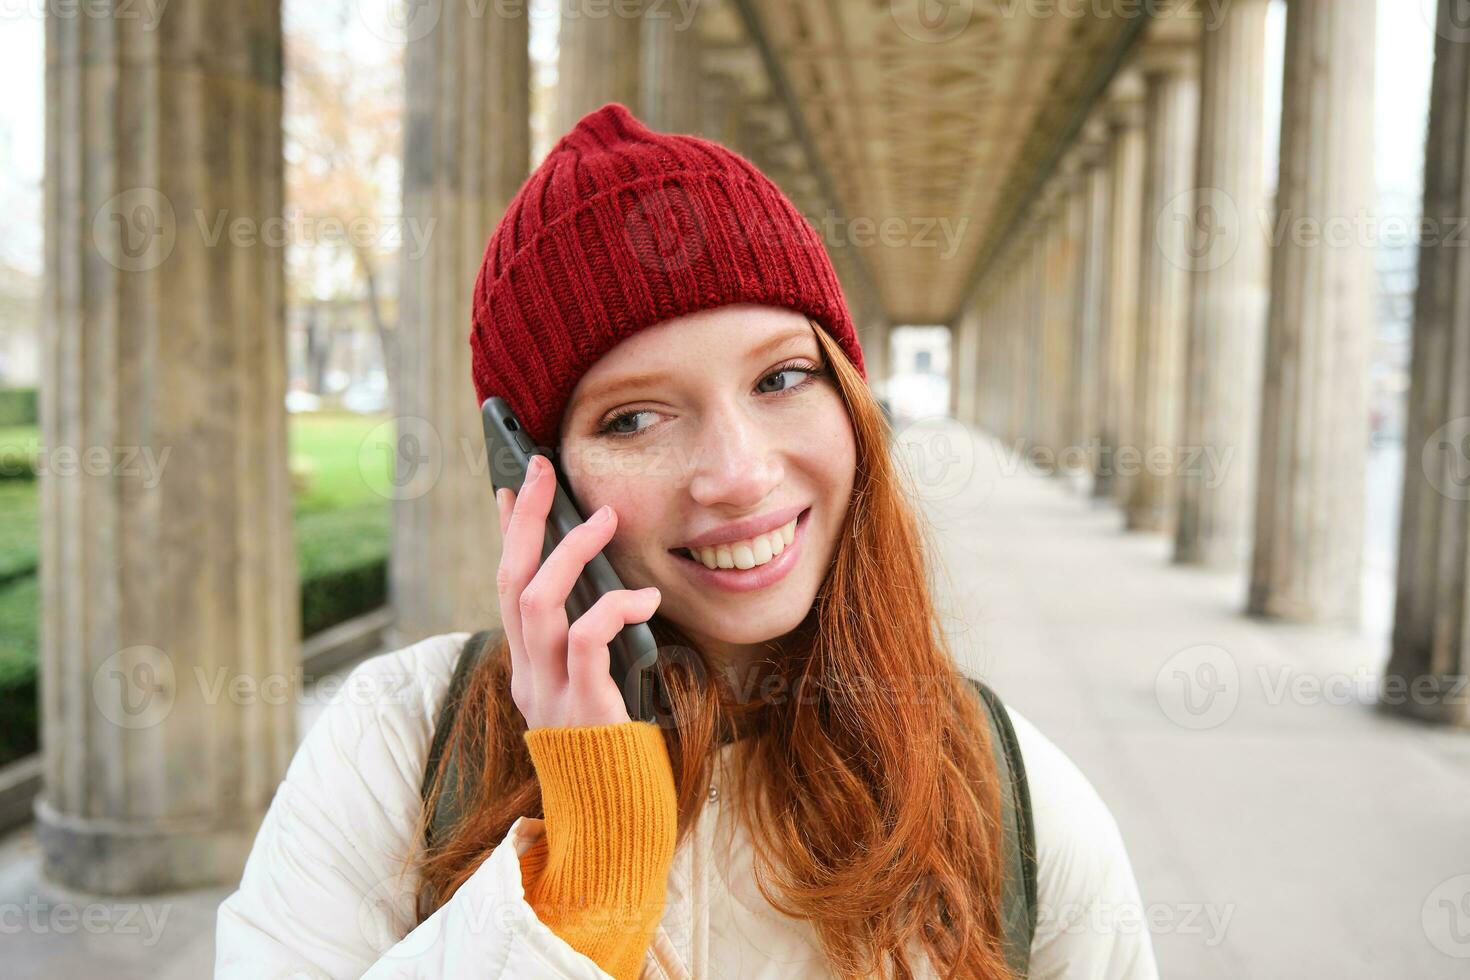 leende söt rödhårig kvinna gör en telefon ringa upp, innehar telefon nära år, har mobil konversation, använder sig av smartphone på gata foto